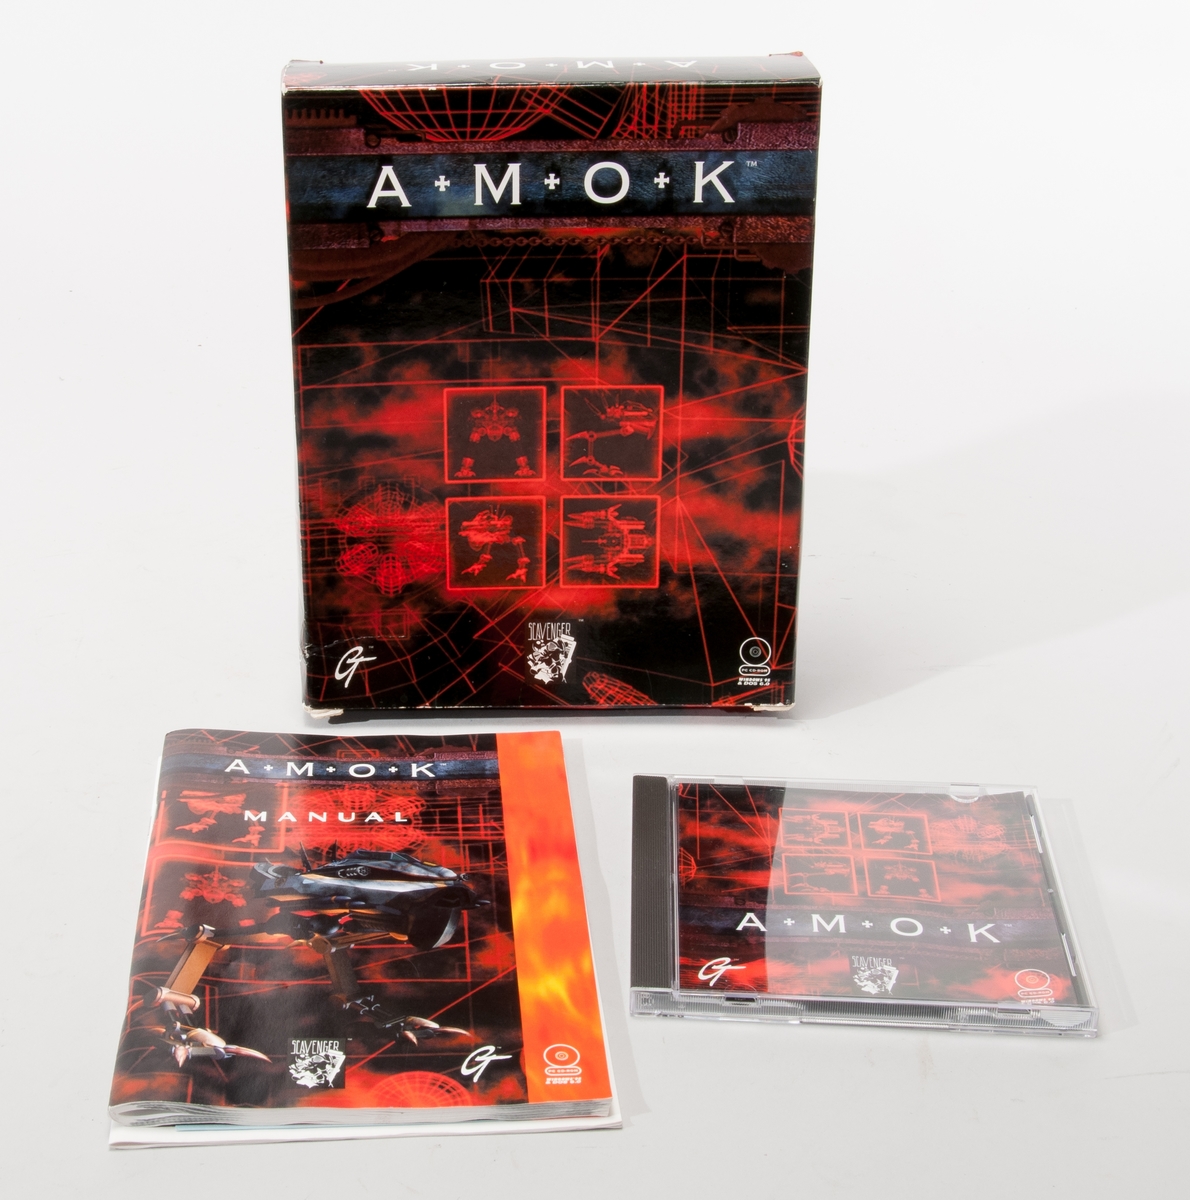 Datorspel AMOK (CD-ROM till PC Windows 95), Scavenger/GT Interactive Software 1996.
Förpackning, innehållande manual och fodral med CD-ROM.